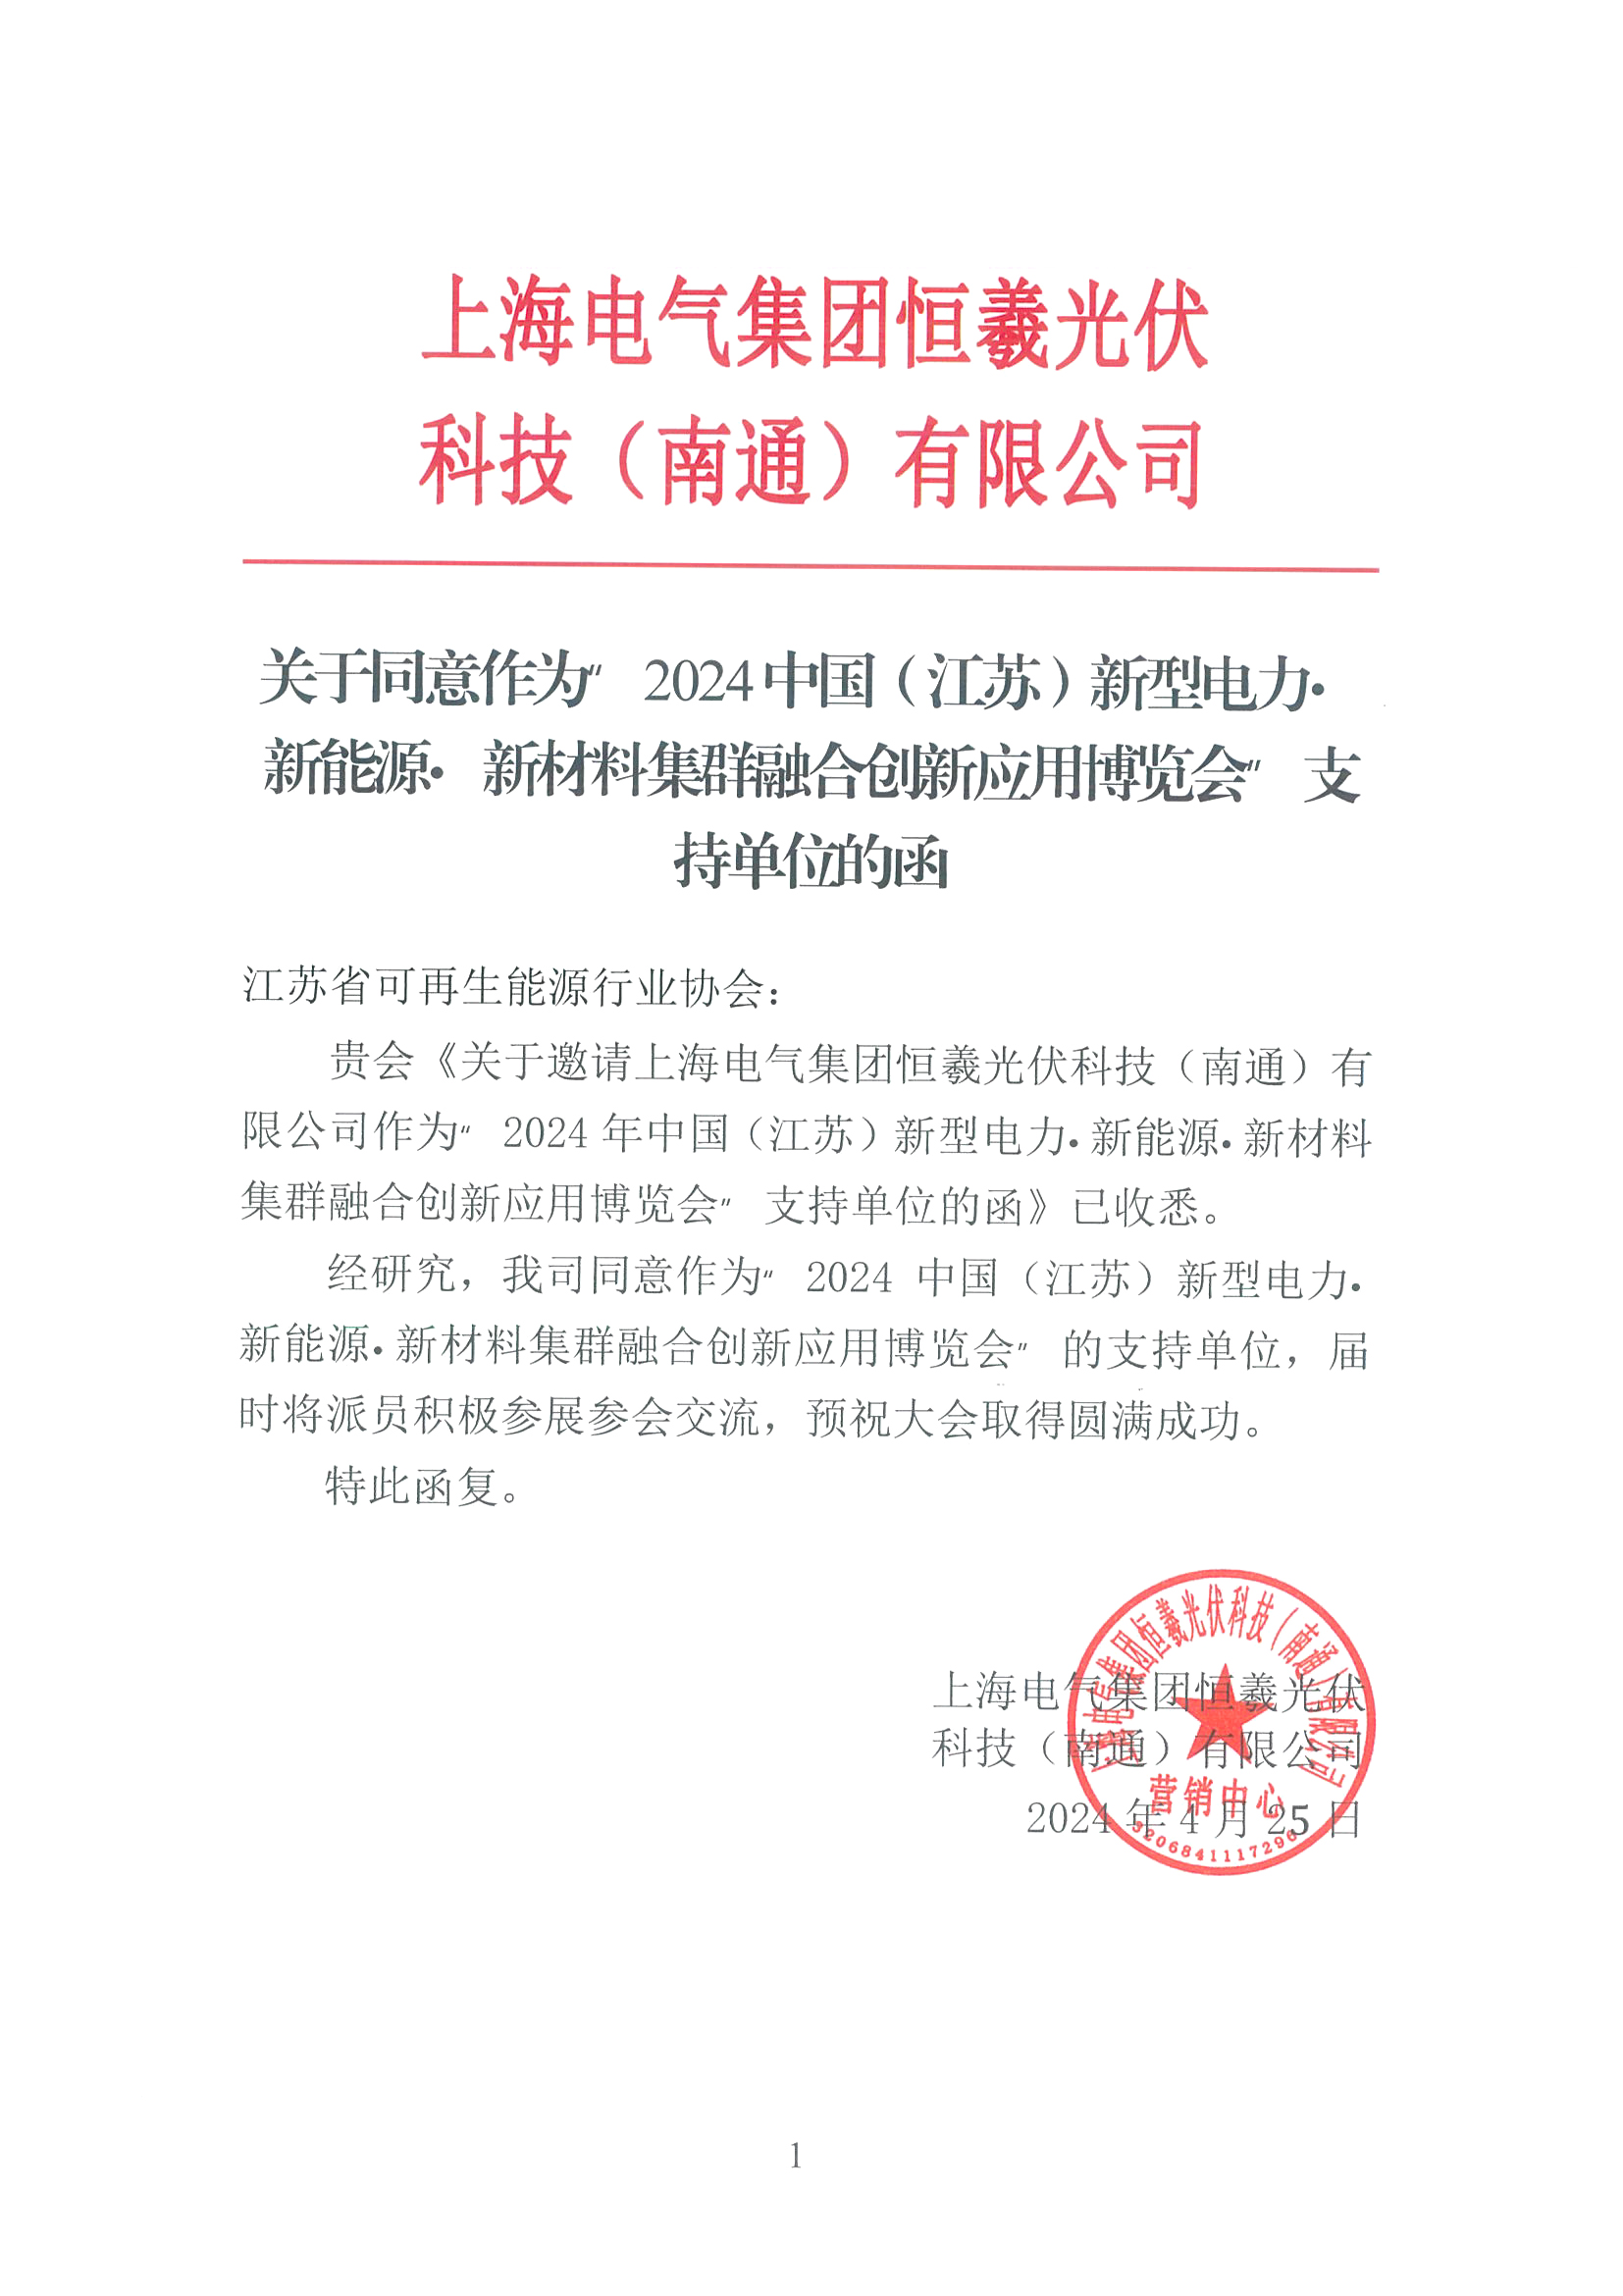 上海电气集团恒曦光伏科技（南通）有限公司